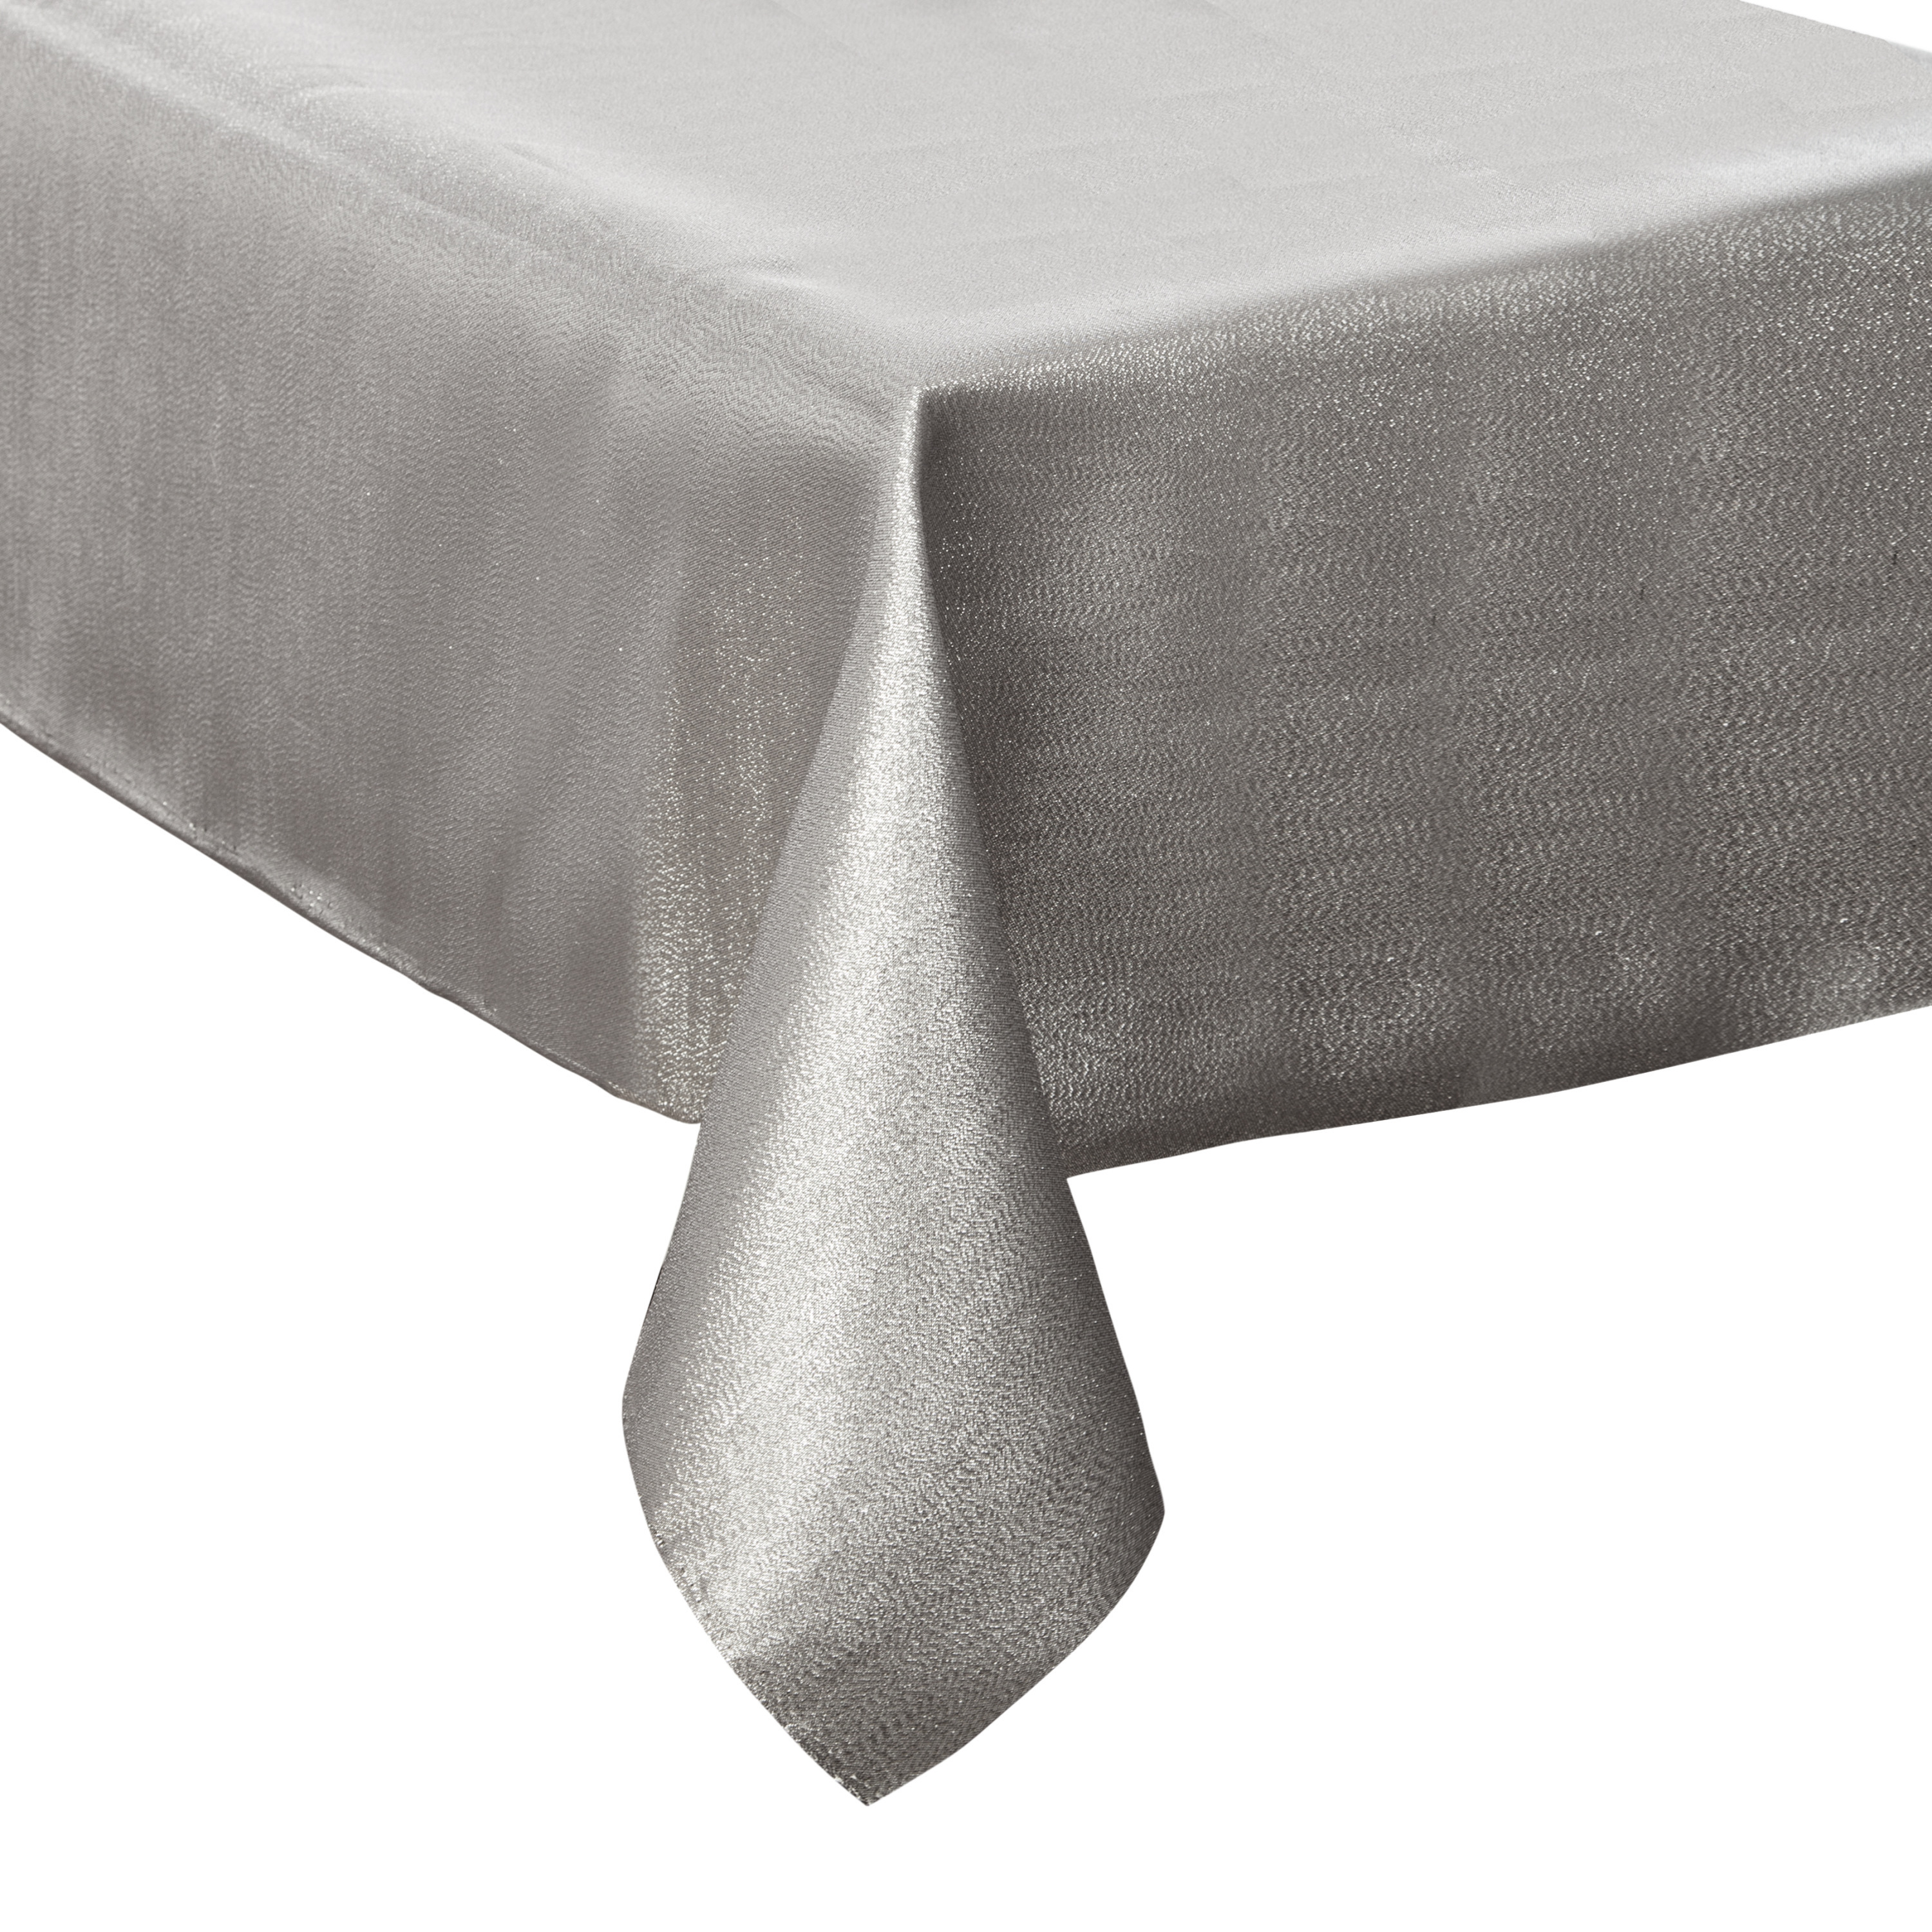 Tafelkleed/tafellaken zilver sparkling effect van polyester formaat 140 x 240 cm